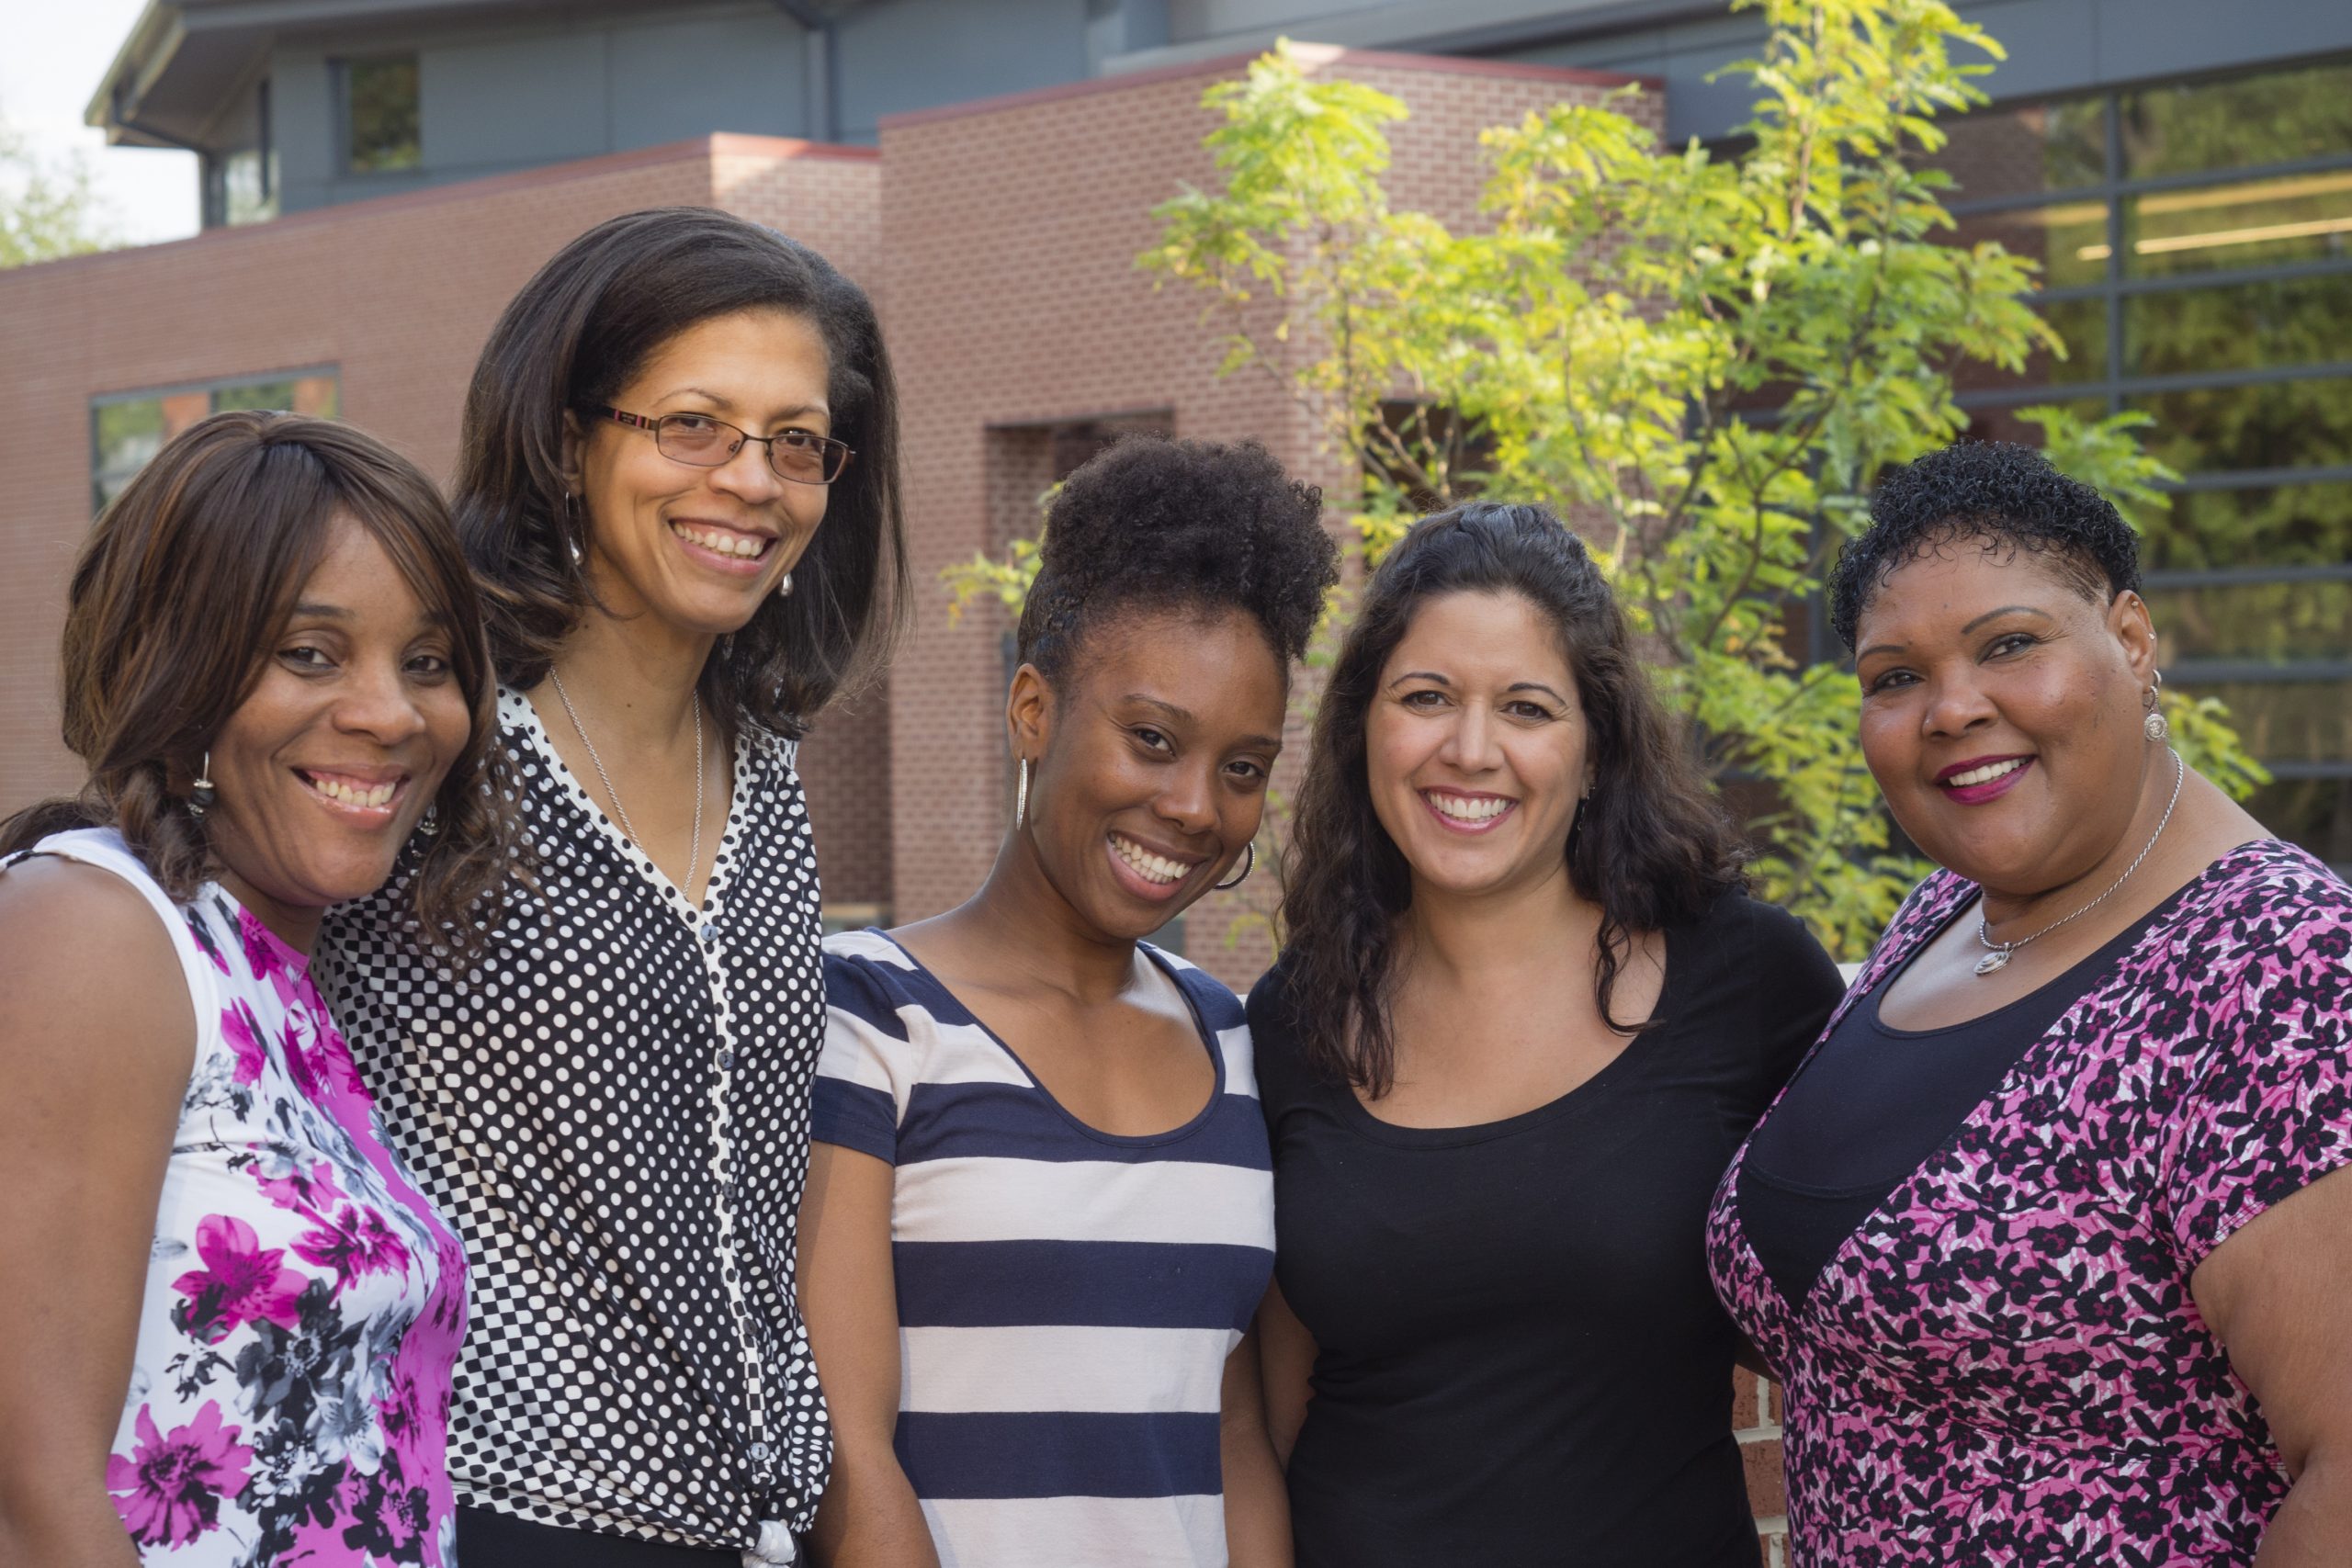 Un grupo de cinco mujeres sonríe y posa frente a un edificio.